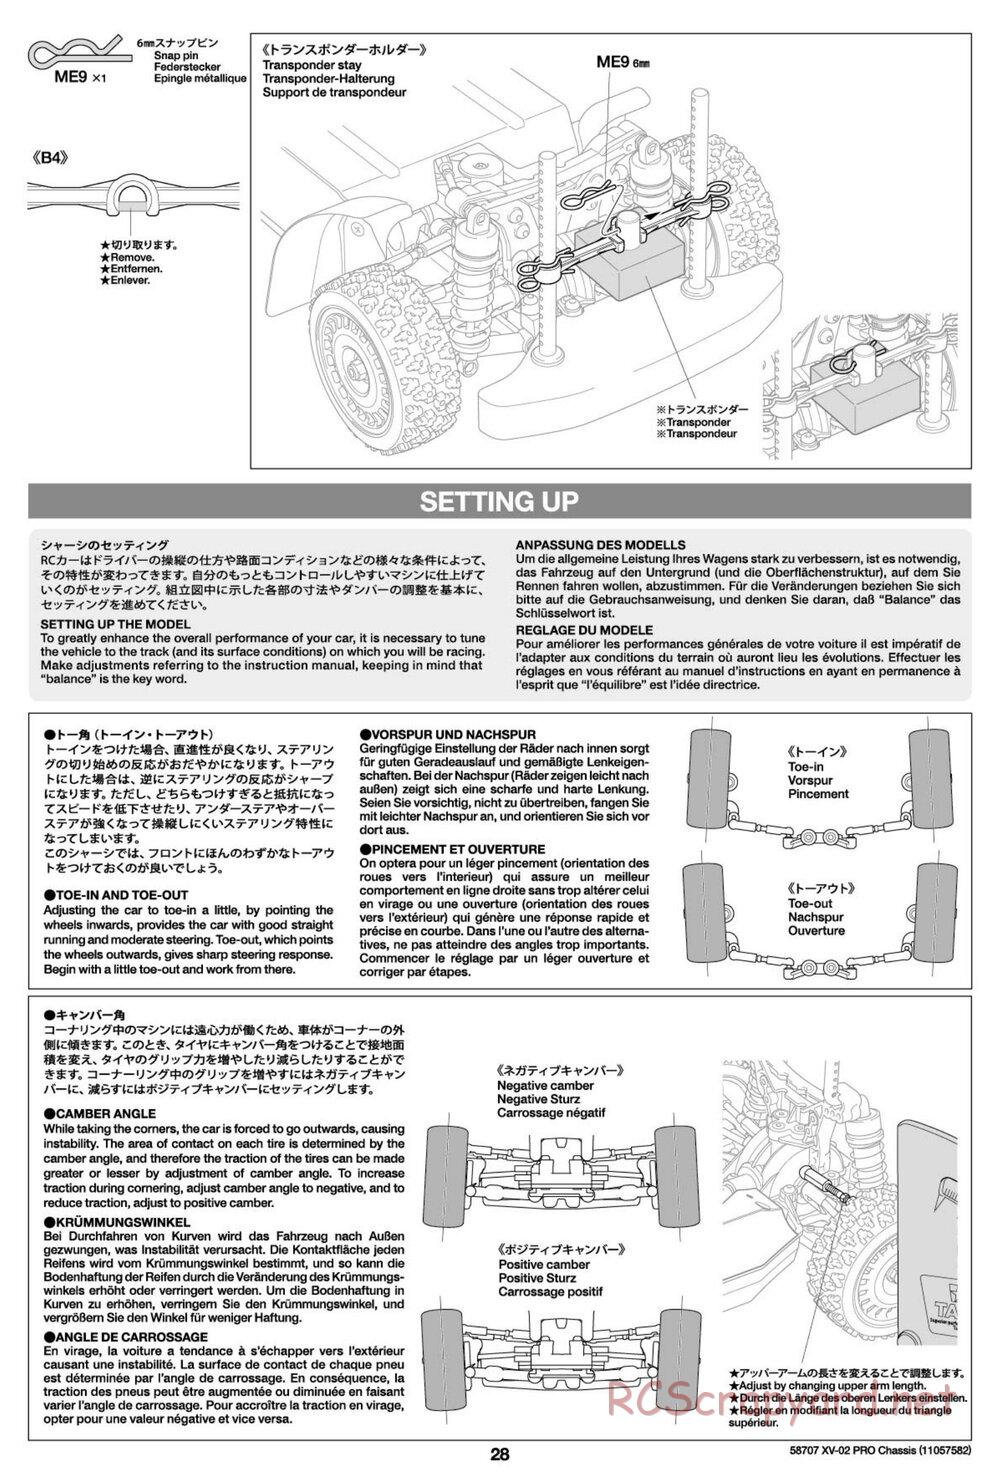 Tamiya - XV-02 Pro Chassis - Manual - Page 28